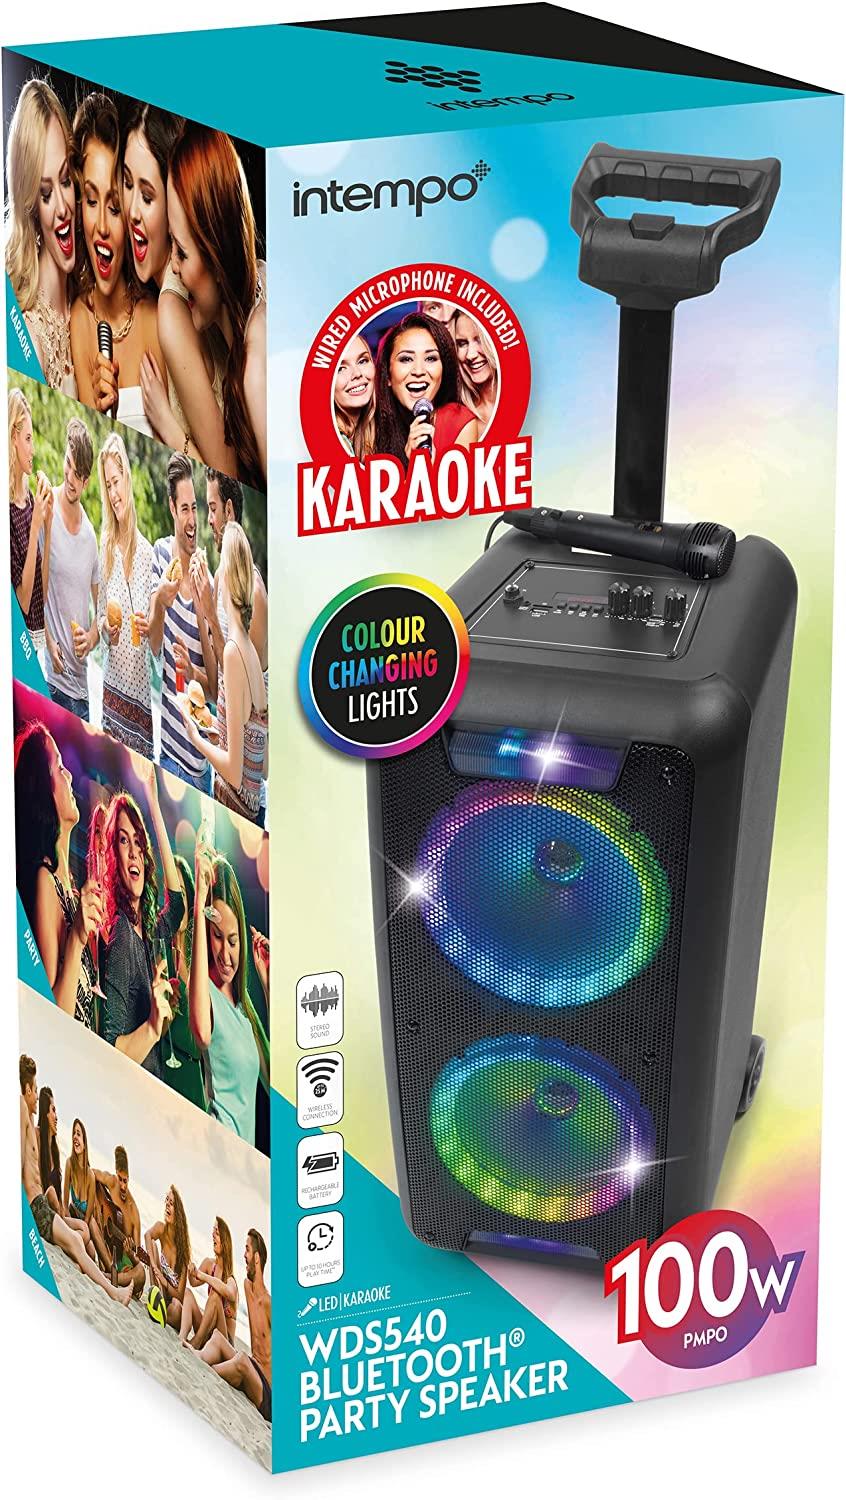 Intempo 100W Trolley Bluetooth Karaoke Speaker